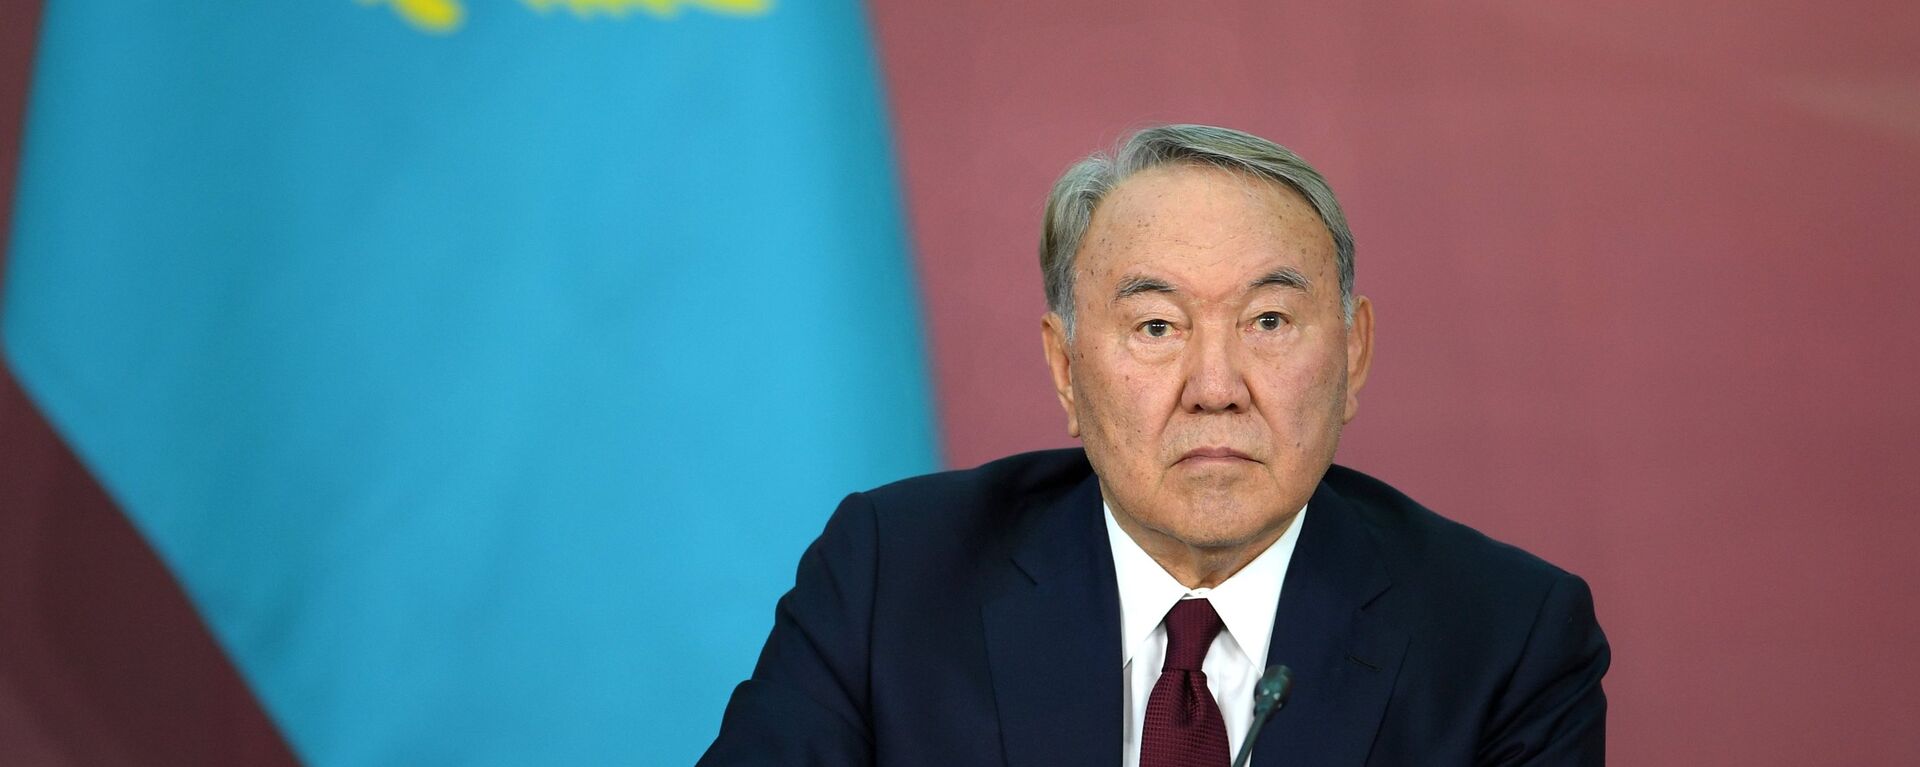 Nursultán Nazarbáev, expresidente de Kazajistán - Sputnik Mundo, 1920, 27.01.2022